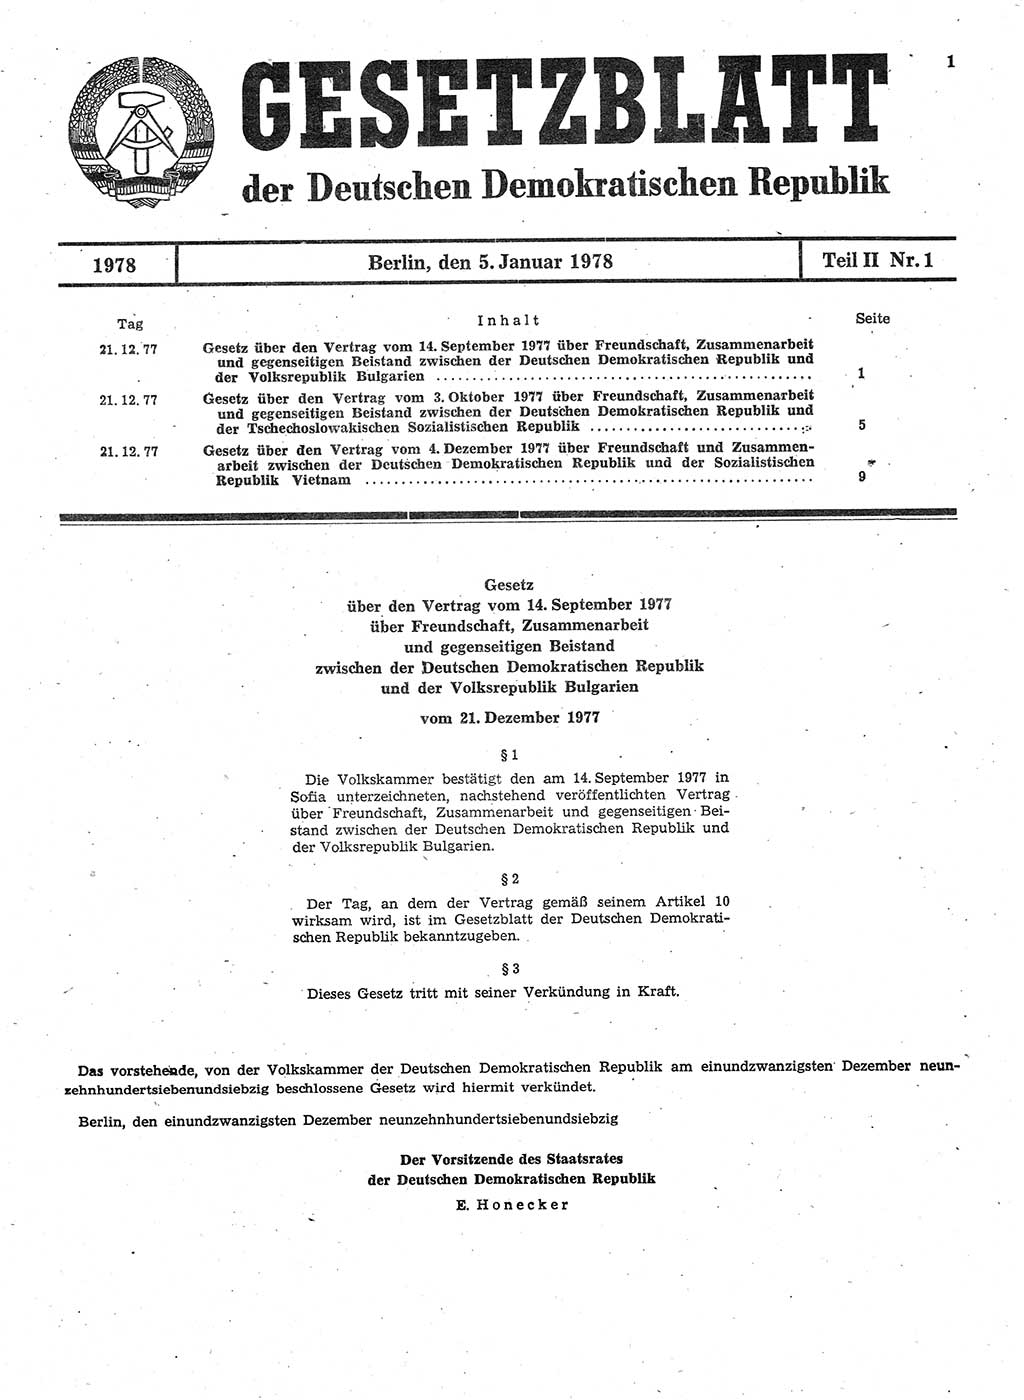 Gesetzblatt (GBl.) der Deutschen Demokratischen Republik (DDR) Teil ⅠⅠ 1978, Seite 1 (GBl. DDR ⅠⅠ 1978, S. 1)